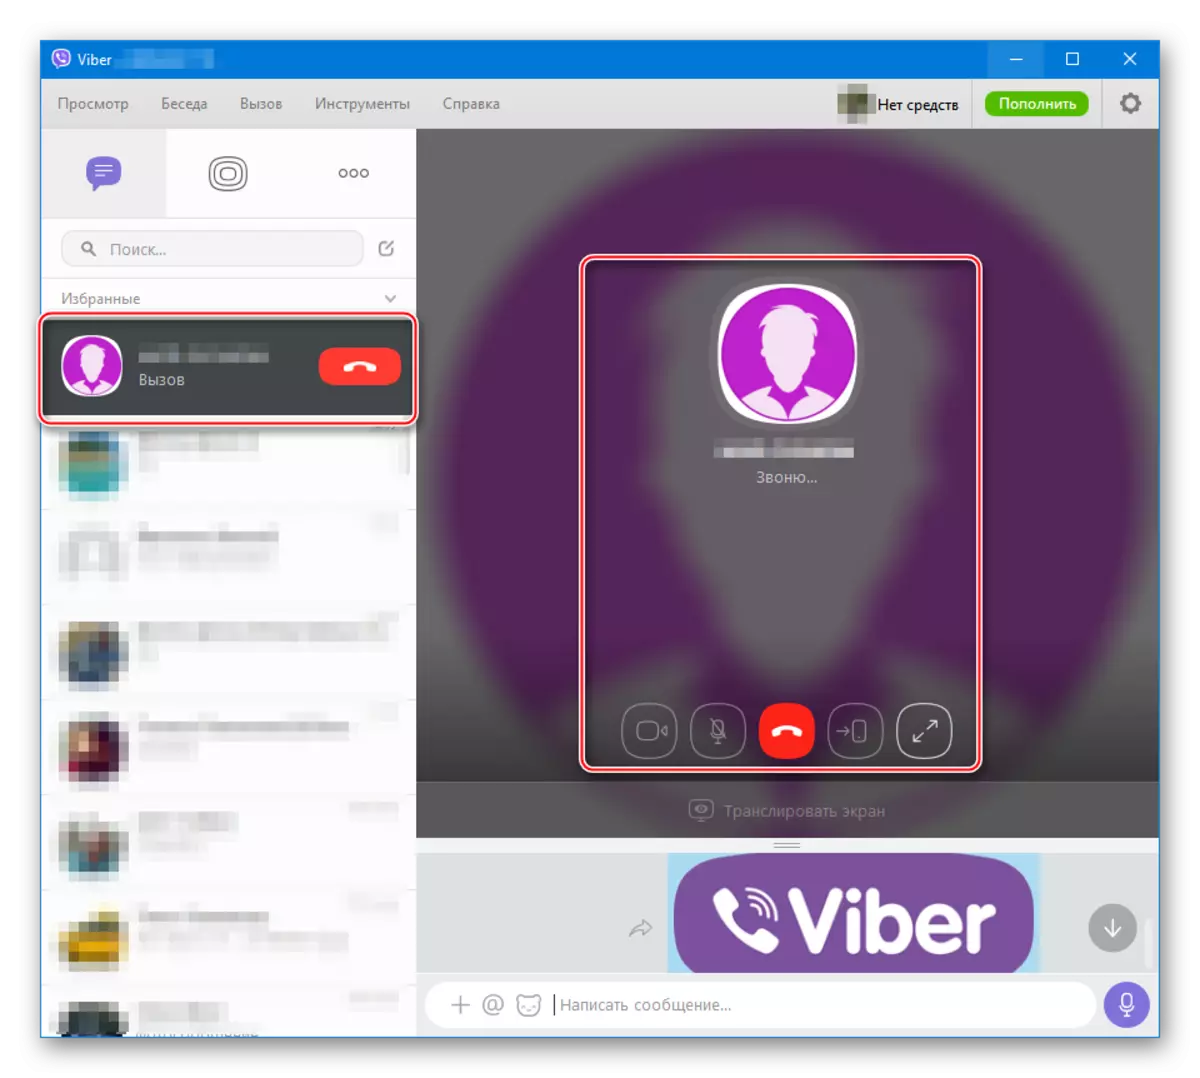 VIber fir Windows Audio a Video Uruff via Messenger